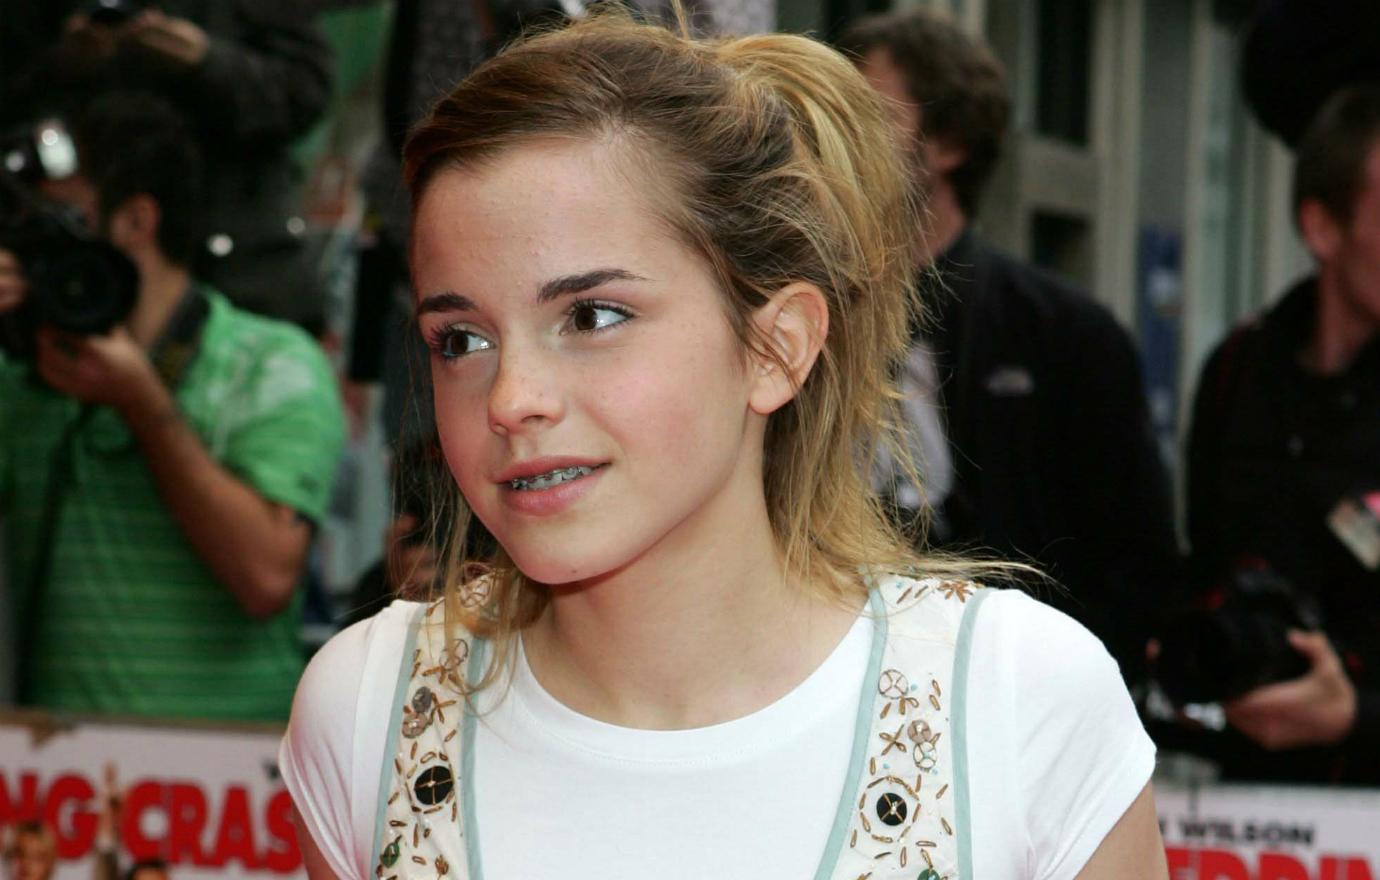 Emma Watson Braces